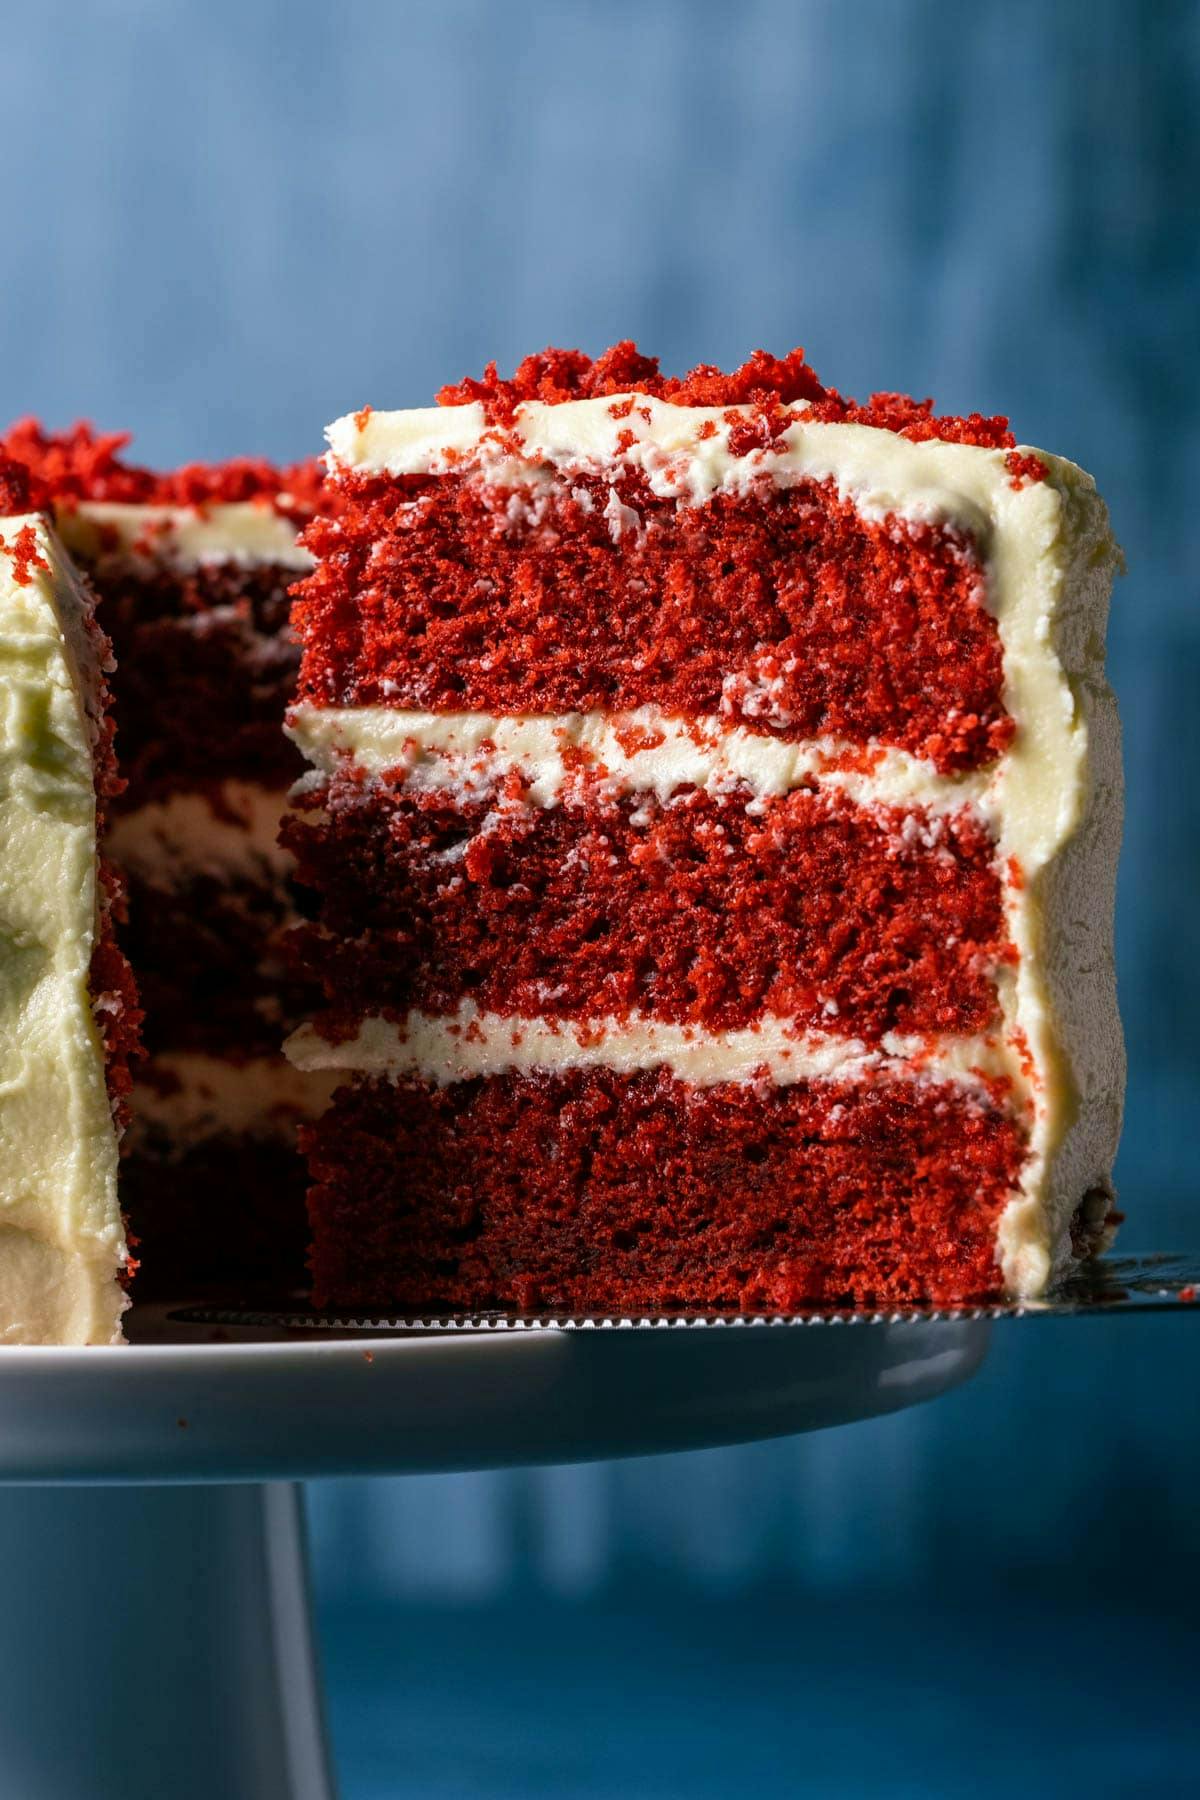 slice of vegan red velvet cake